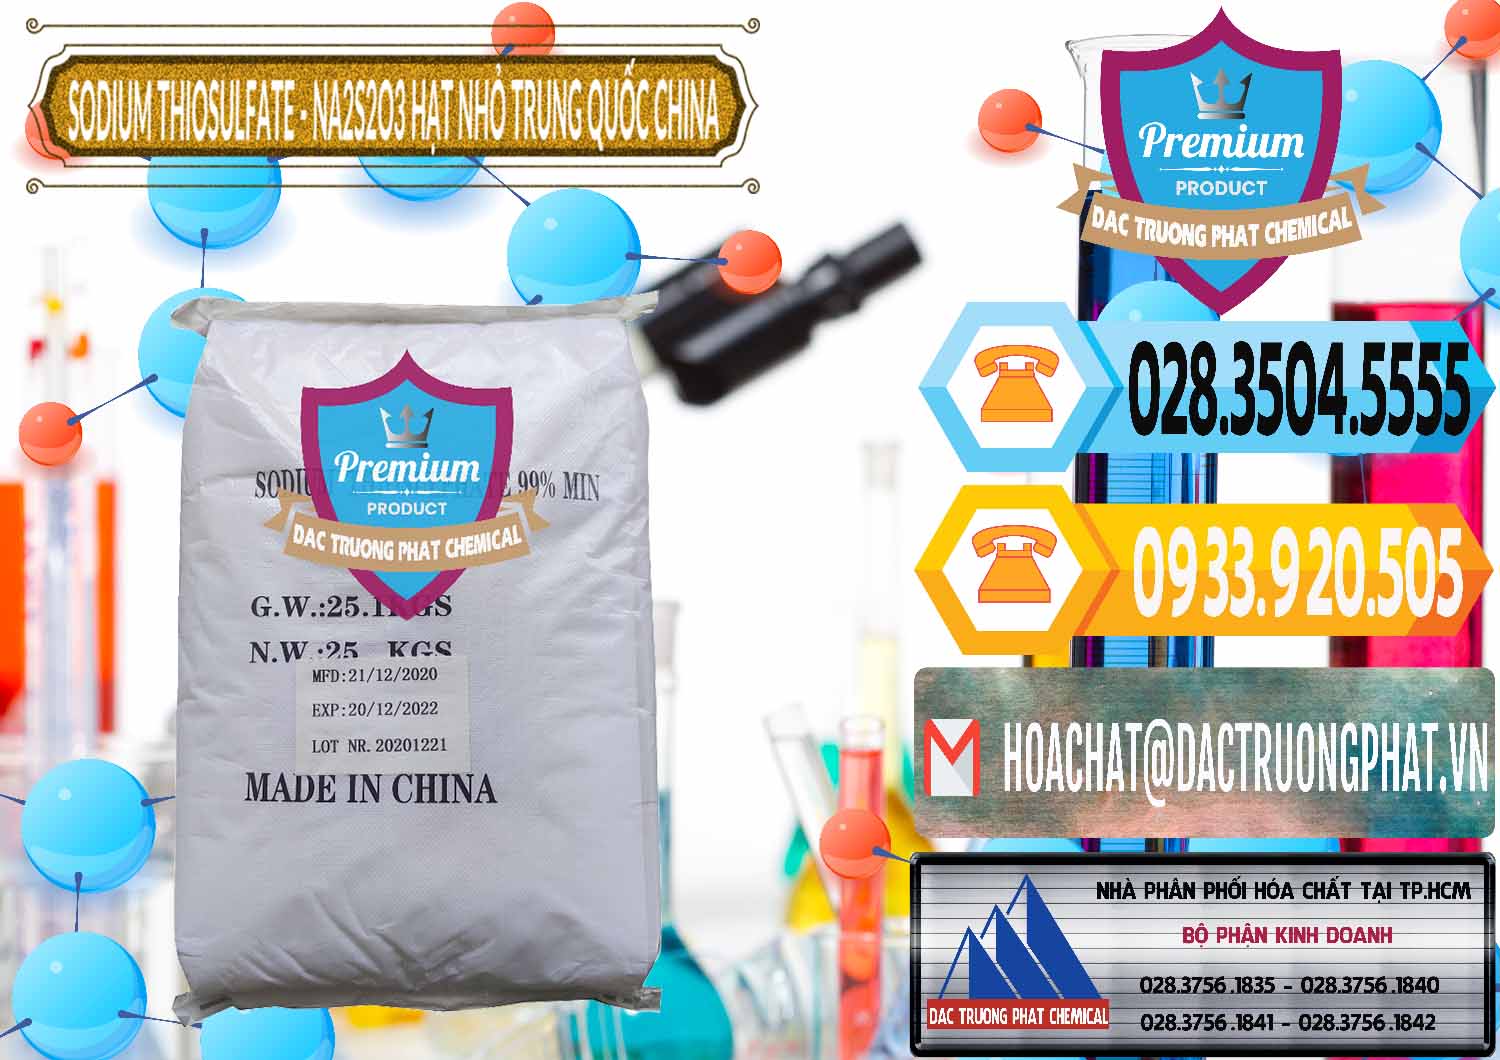 Đơn vị chuyên phân phối và bán Sodium Thiosulfate - NA2S2O3 Hạt Nhỏ Trung Quốc China - 0204 - Nơi chuyên cung cấp - kinh doanh hóa chất tại TP.HCM - hoachattayrua.net